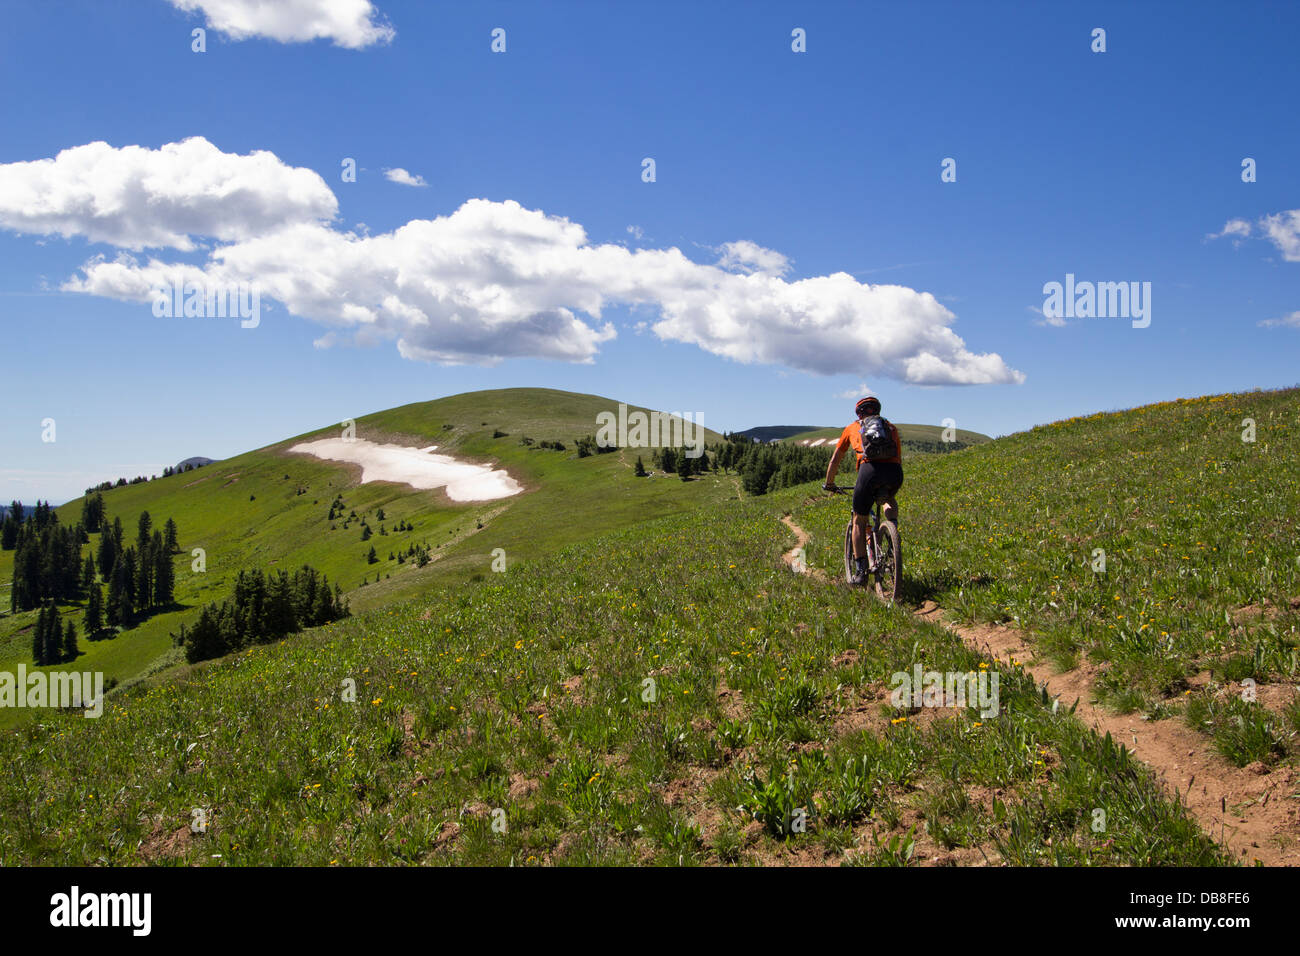 Kelly Perkins mountain biking on the Colorado trail. Stock Photo